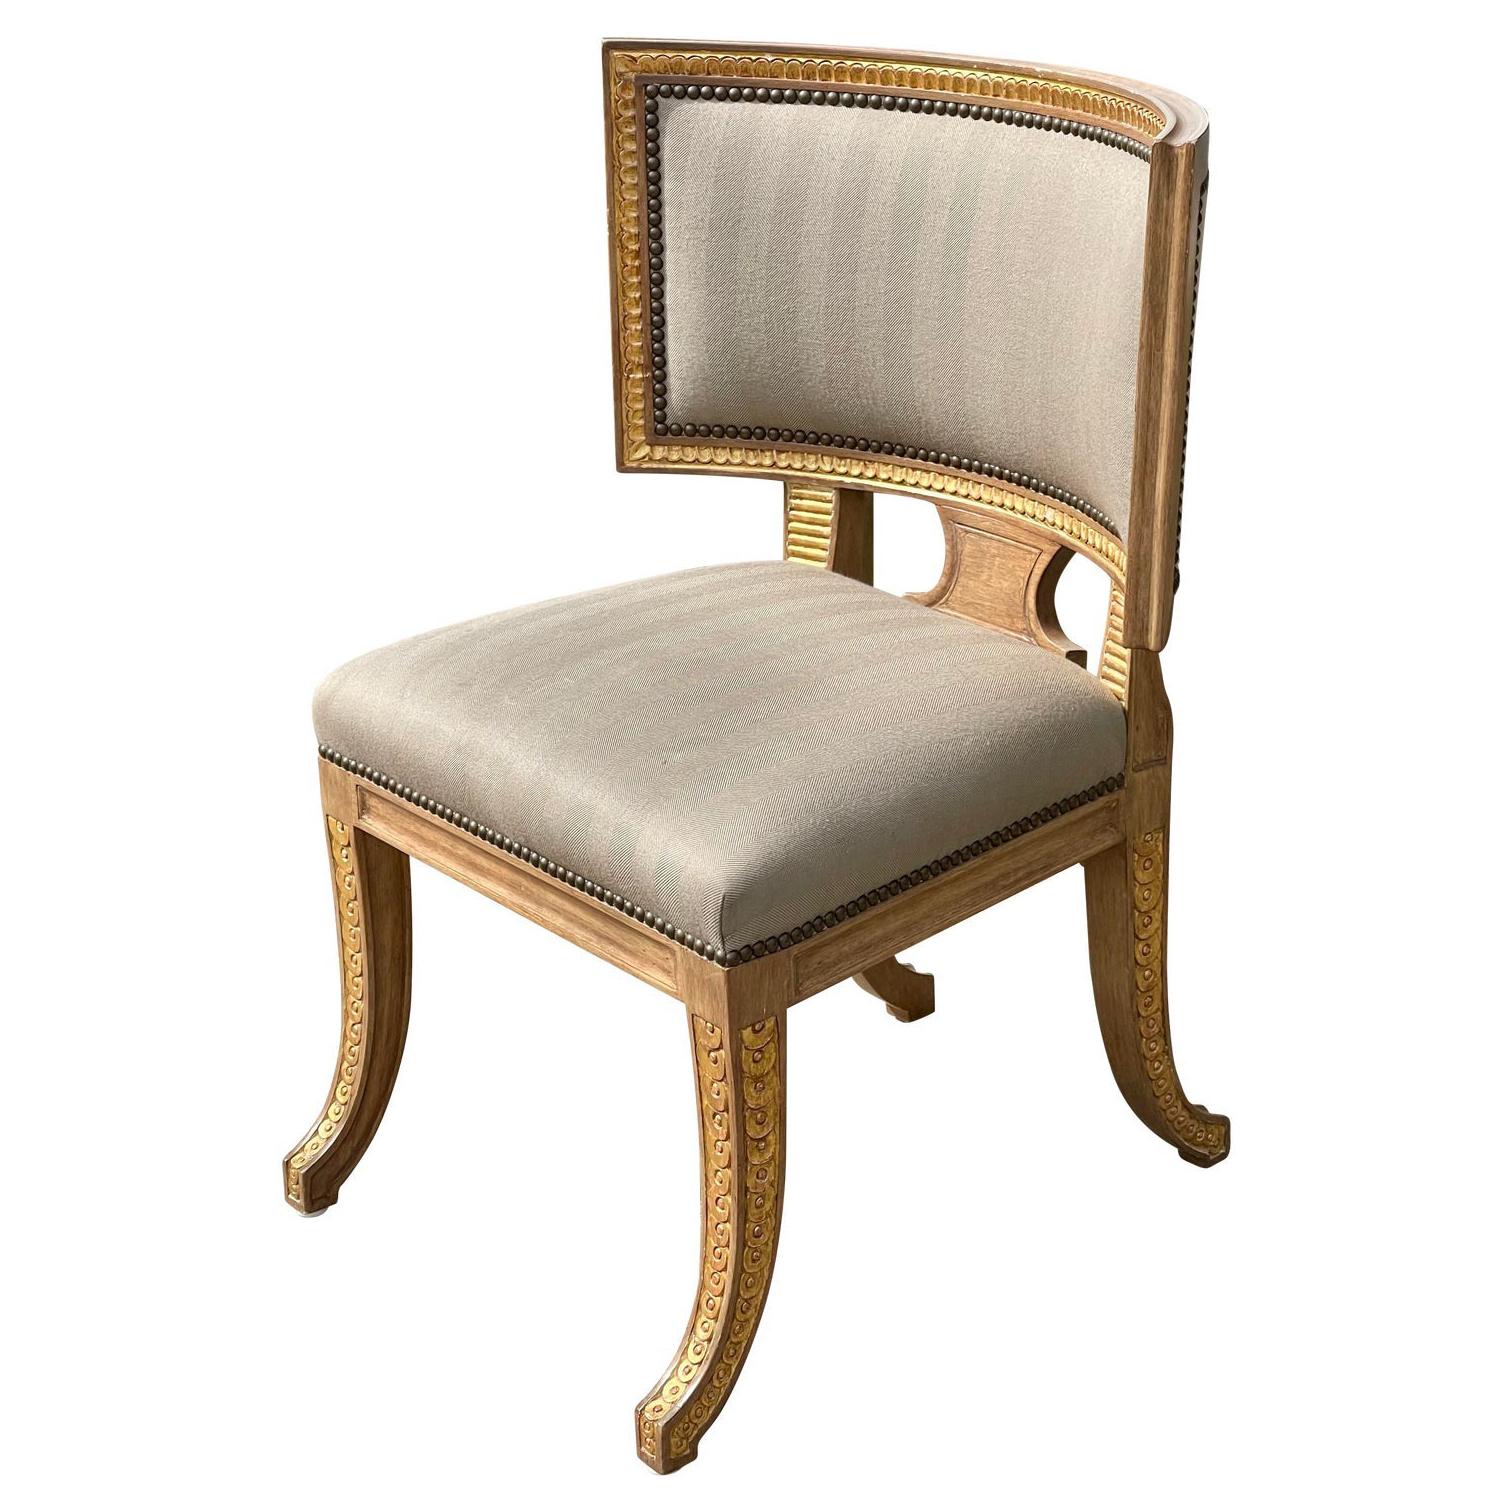 Quatrain by Dessin Fournir Swedish Neoclassical Style Side Chair